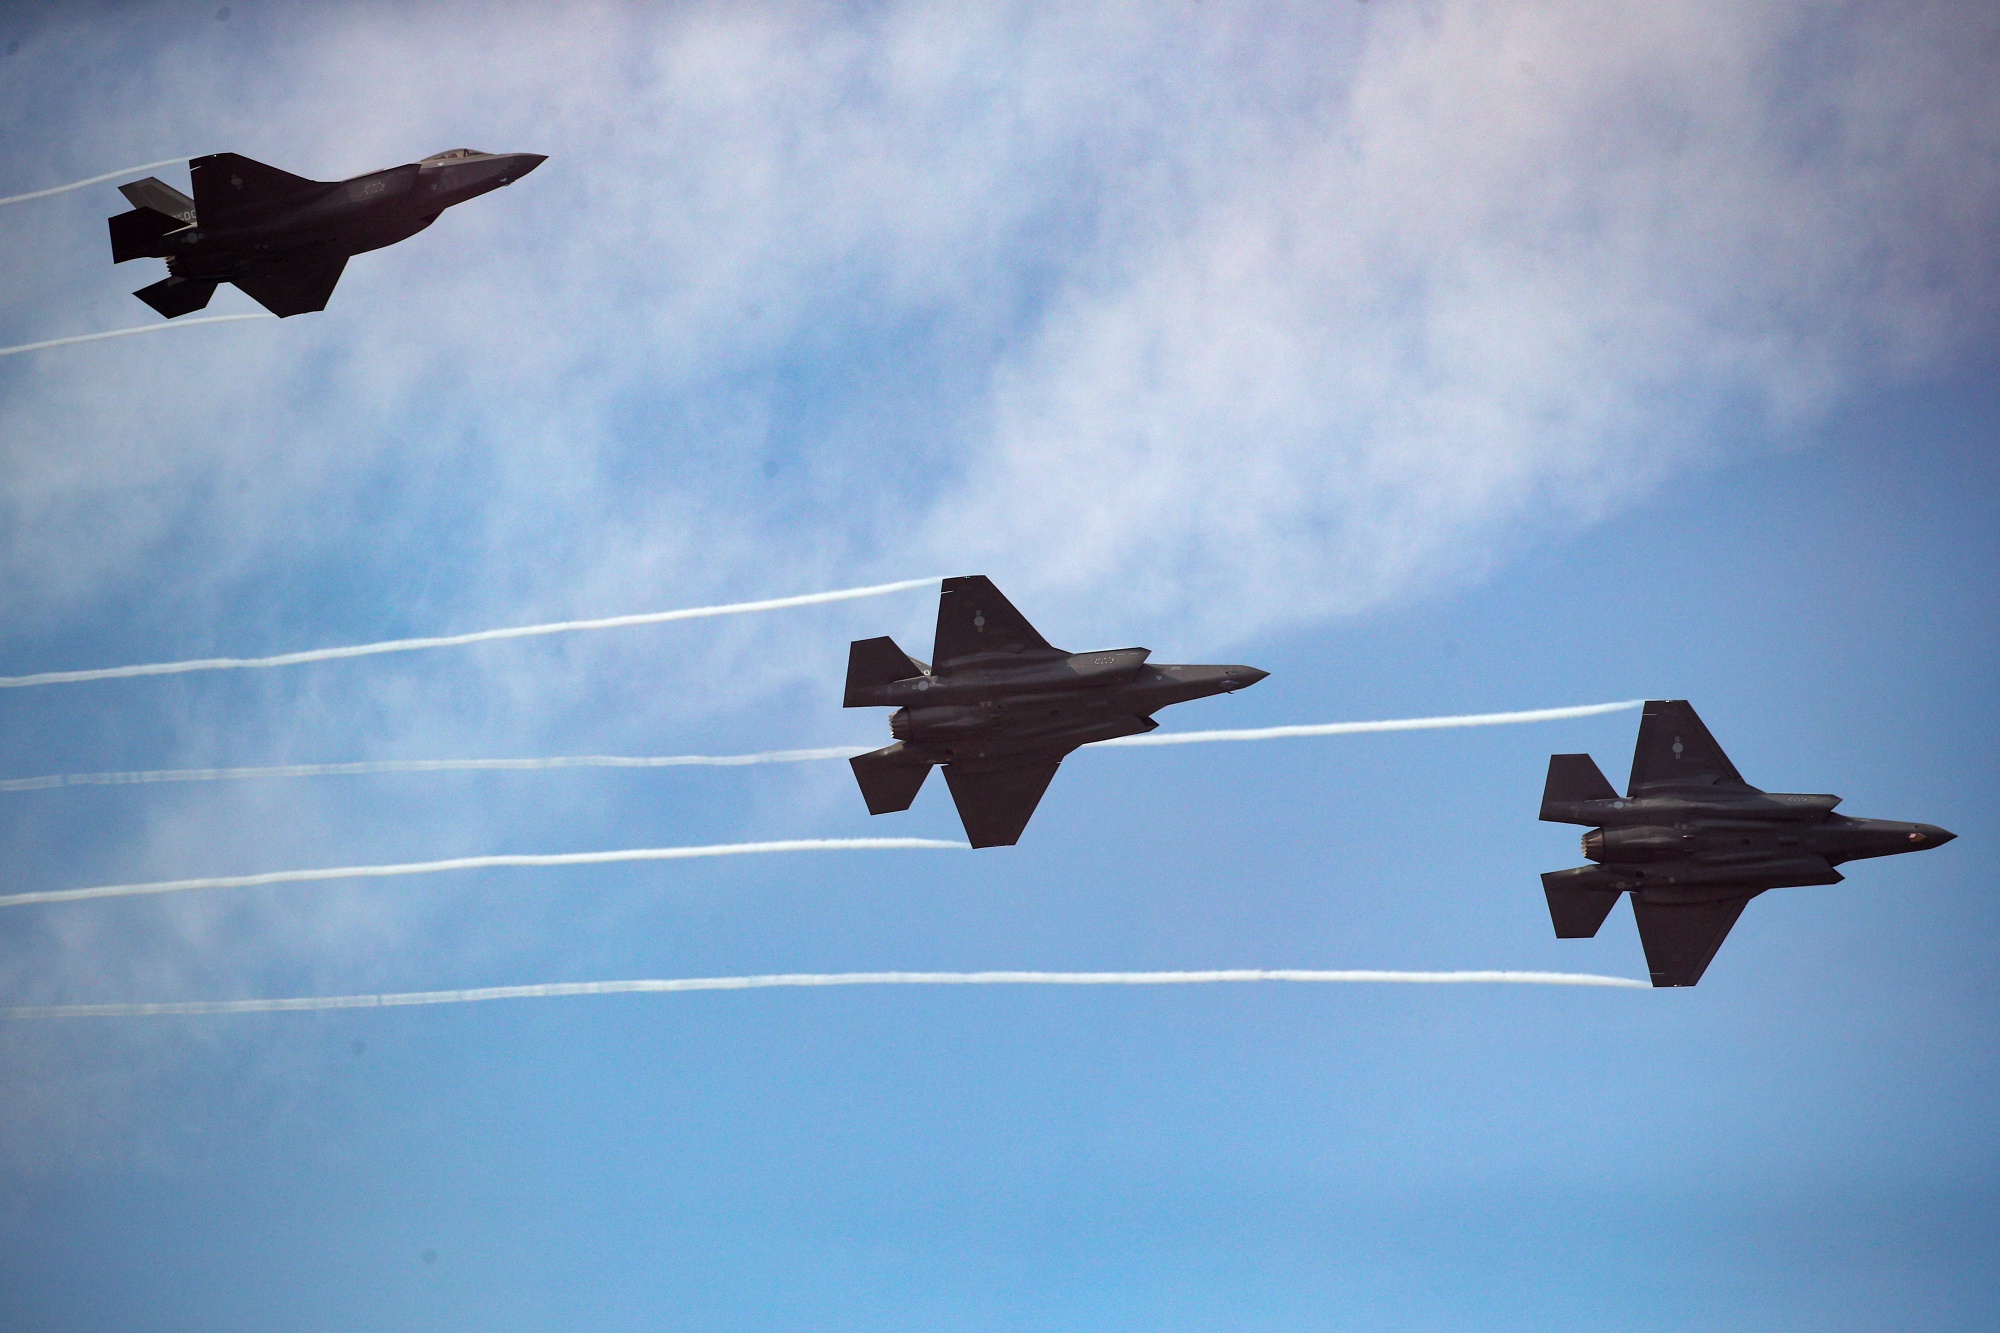 Pentagon stoppt Auslieferungen von F-35 Lightning II-Kampfflugzeugen der fünften Generation wegen chinesischer Magneten